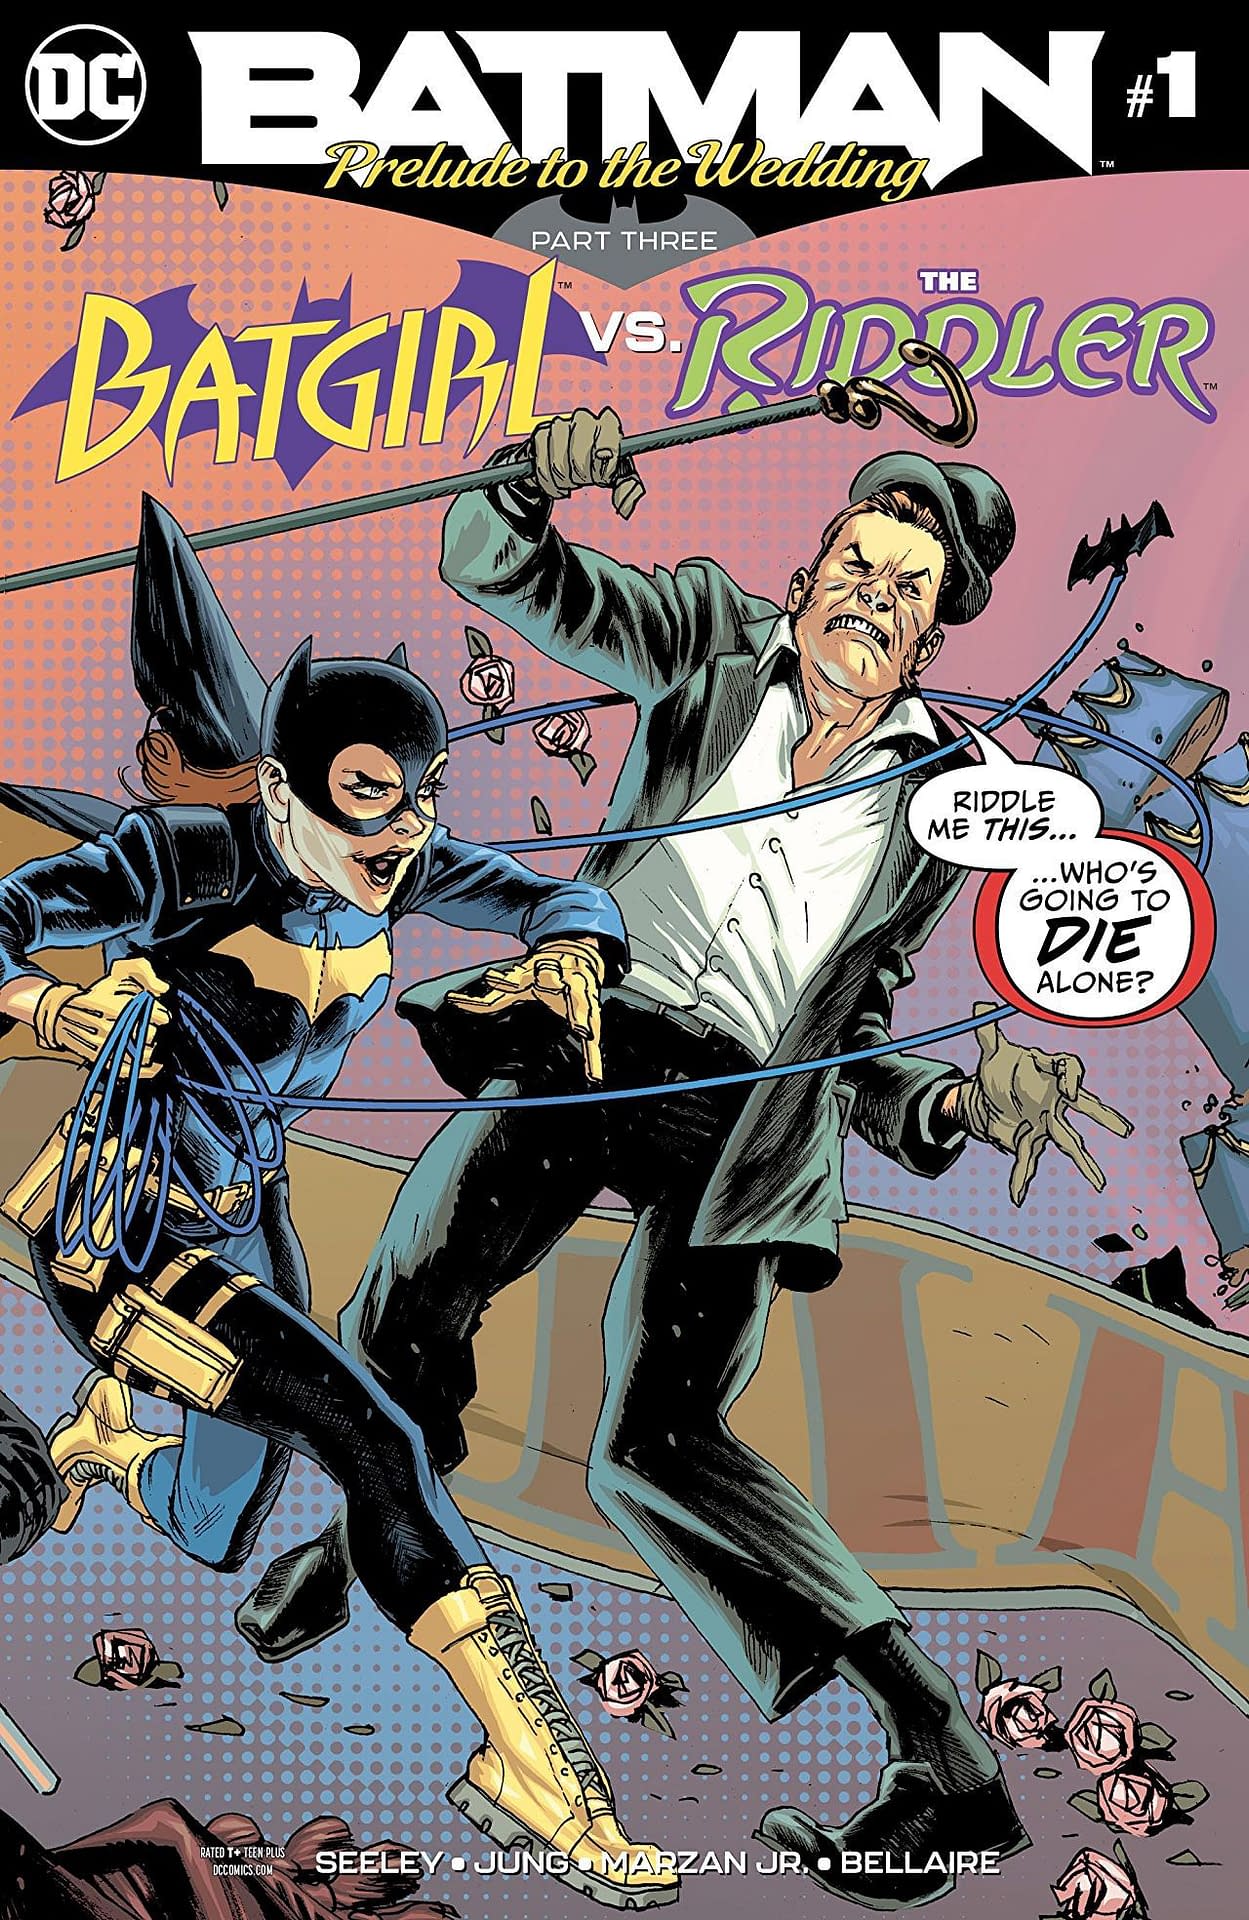 Batgirl vs. the Riddler #1 Review: Ed Nigma the Nice Guy - Bleeding Cool